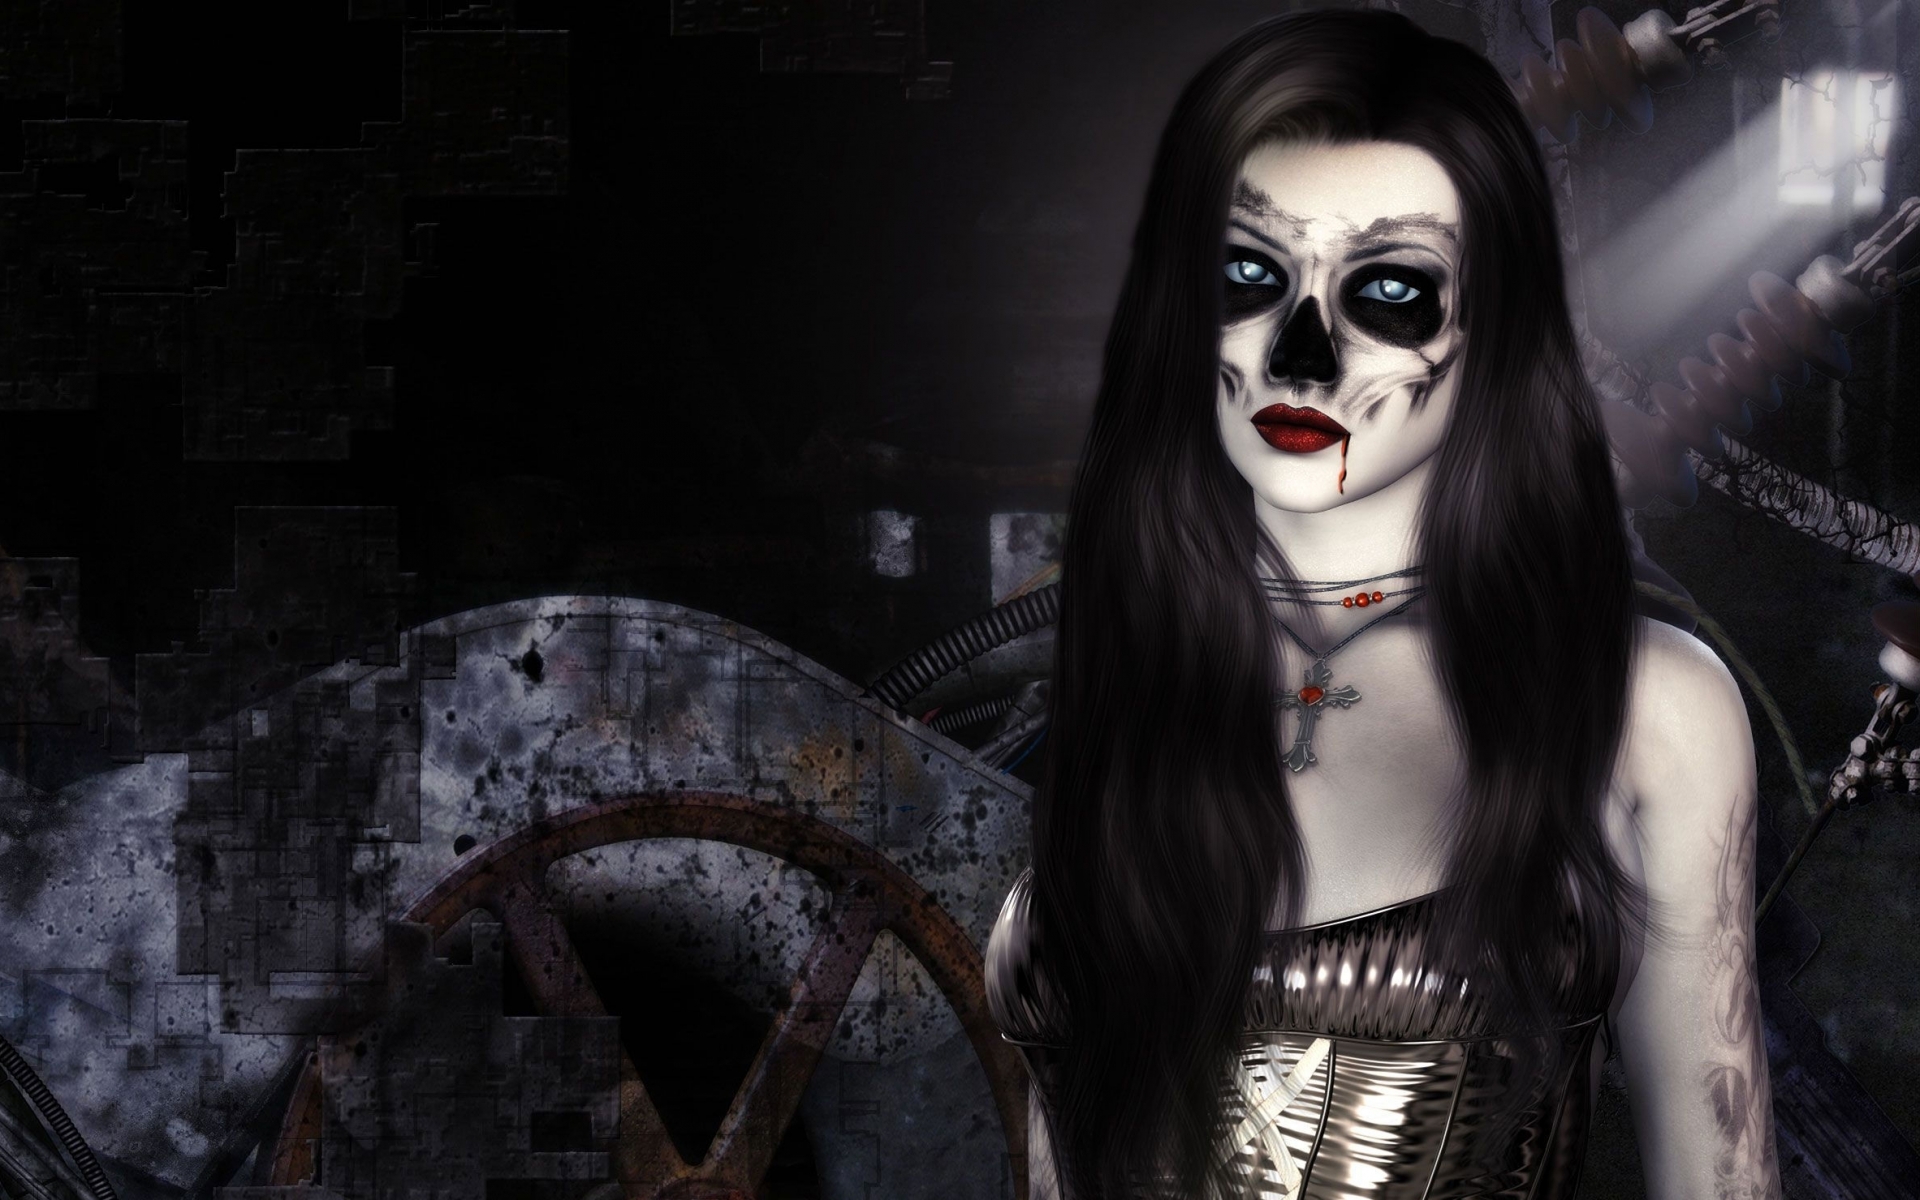 Dark Horror Fantasy Gothic 3d Cg Digital Art Vampire Evil Women Face